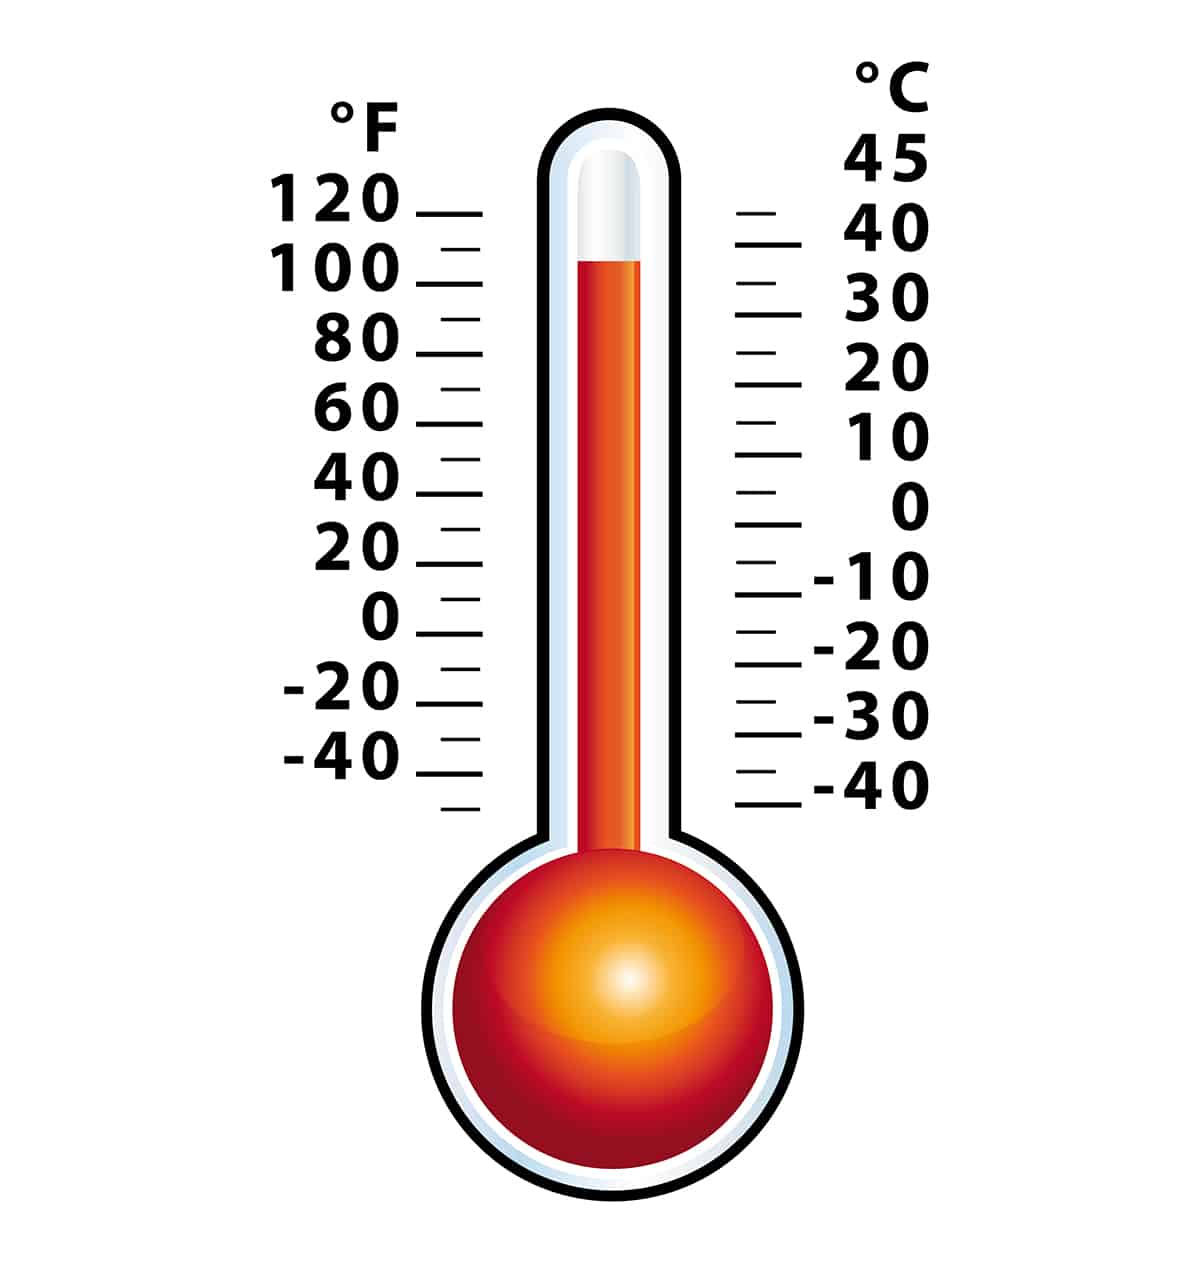 Fahrenheit to Celsius Formula